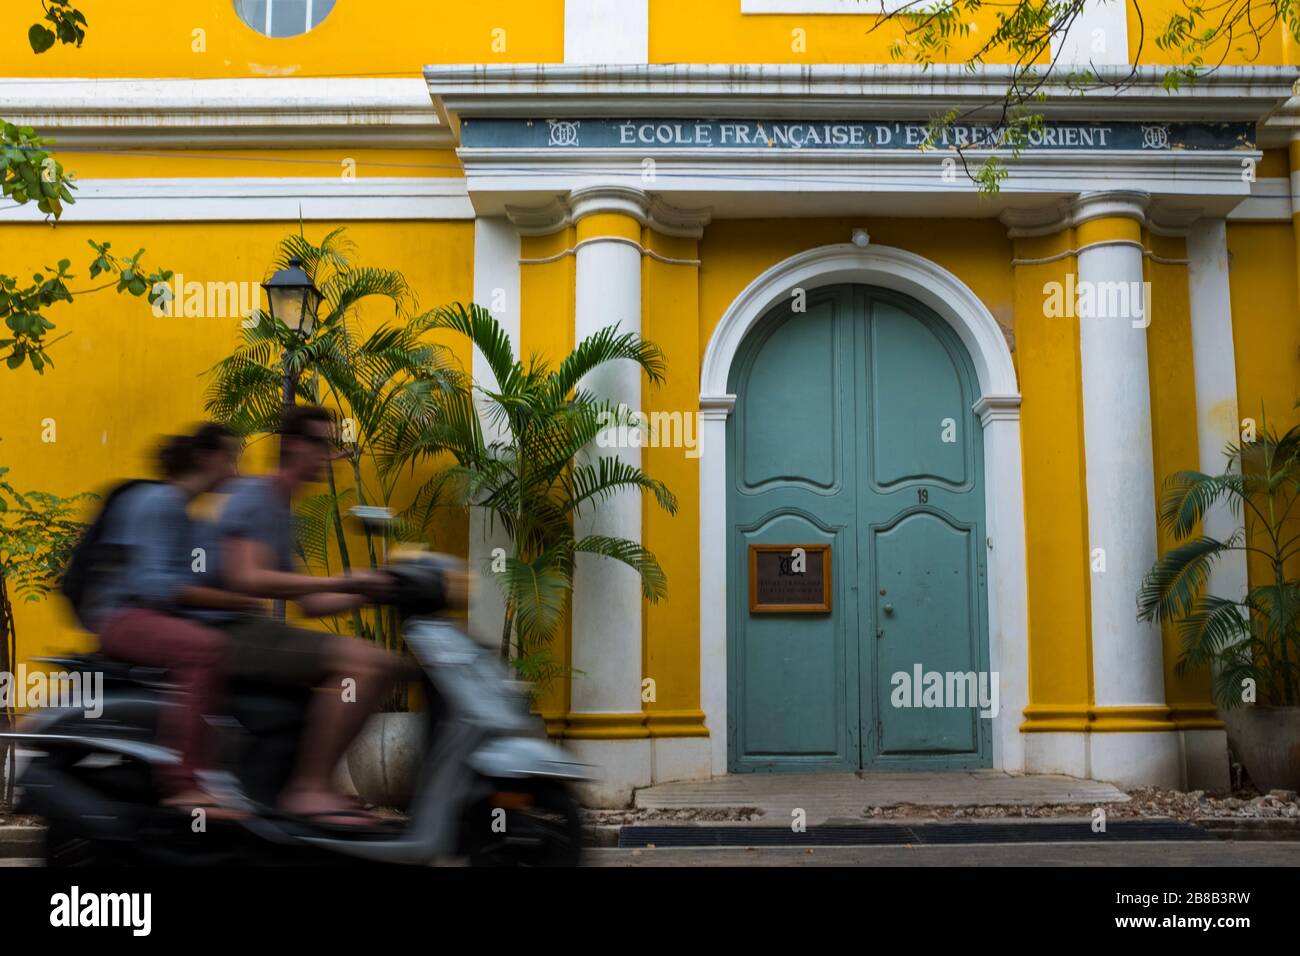 Pondicherry, India - 17 marzo 2018: Coppia irriconoscibile su uno scooter che passa davanti ad un edificio giallo della scuola con sfocatura del movimento Foto Stock